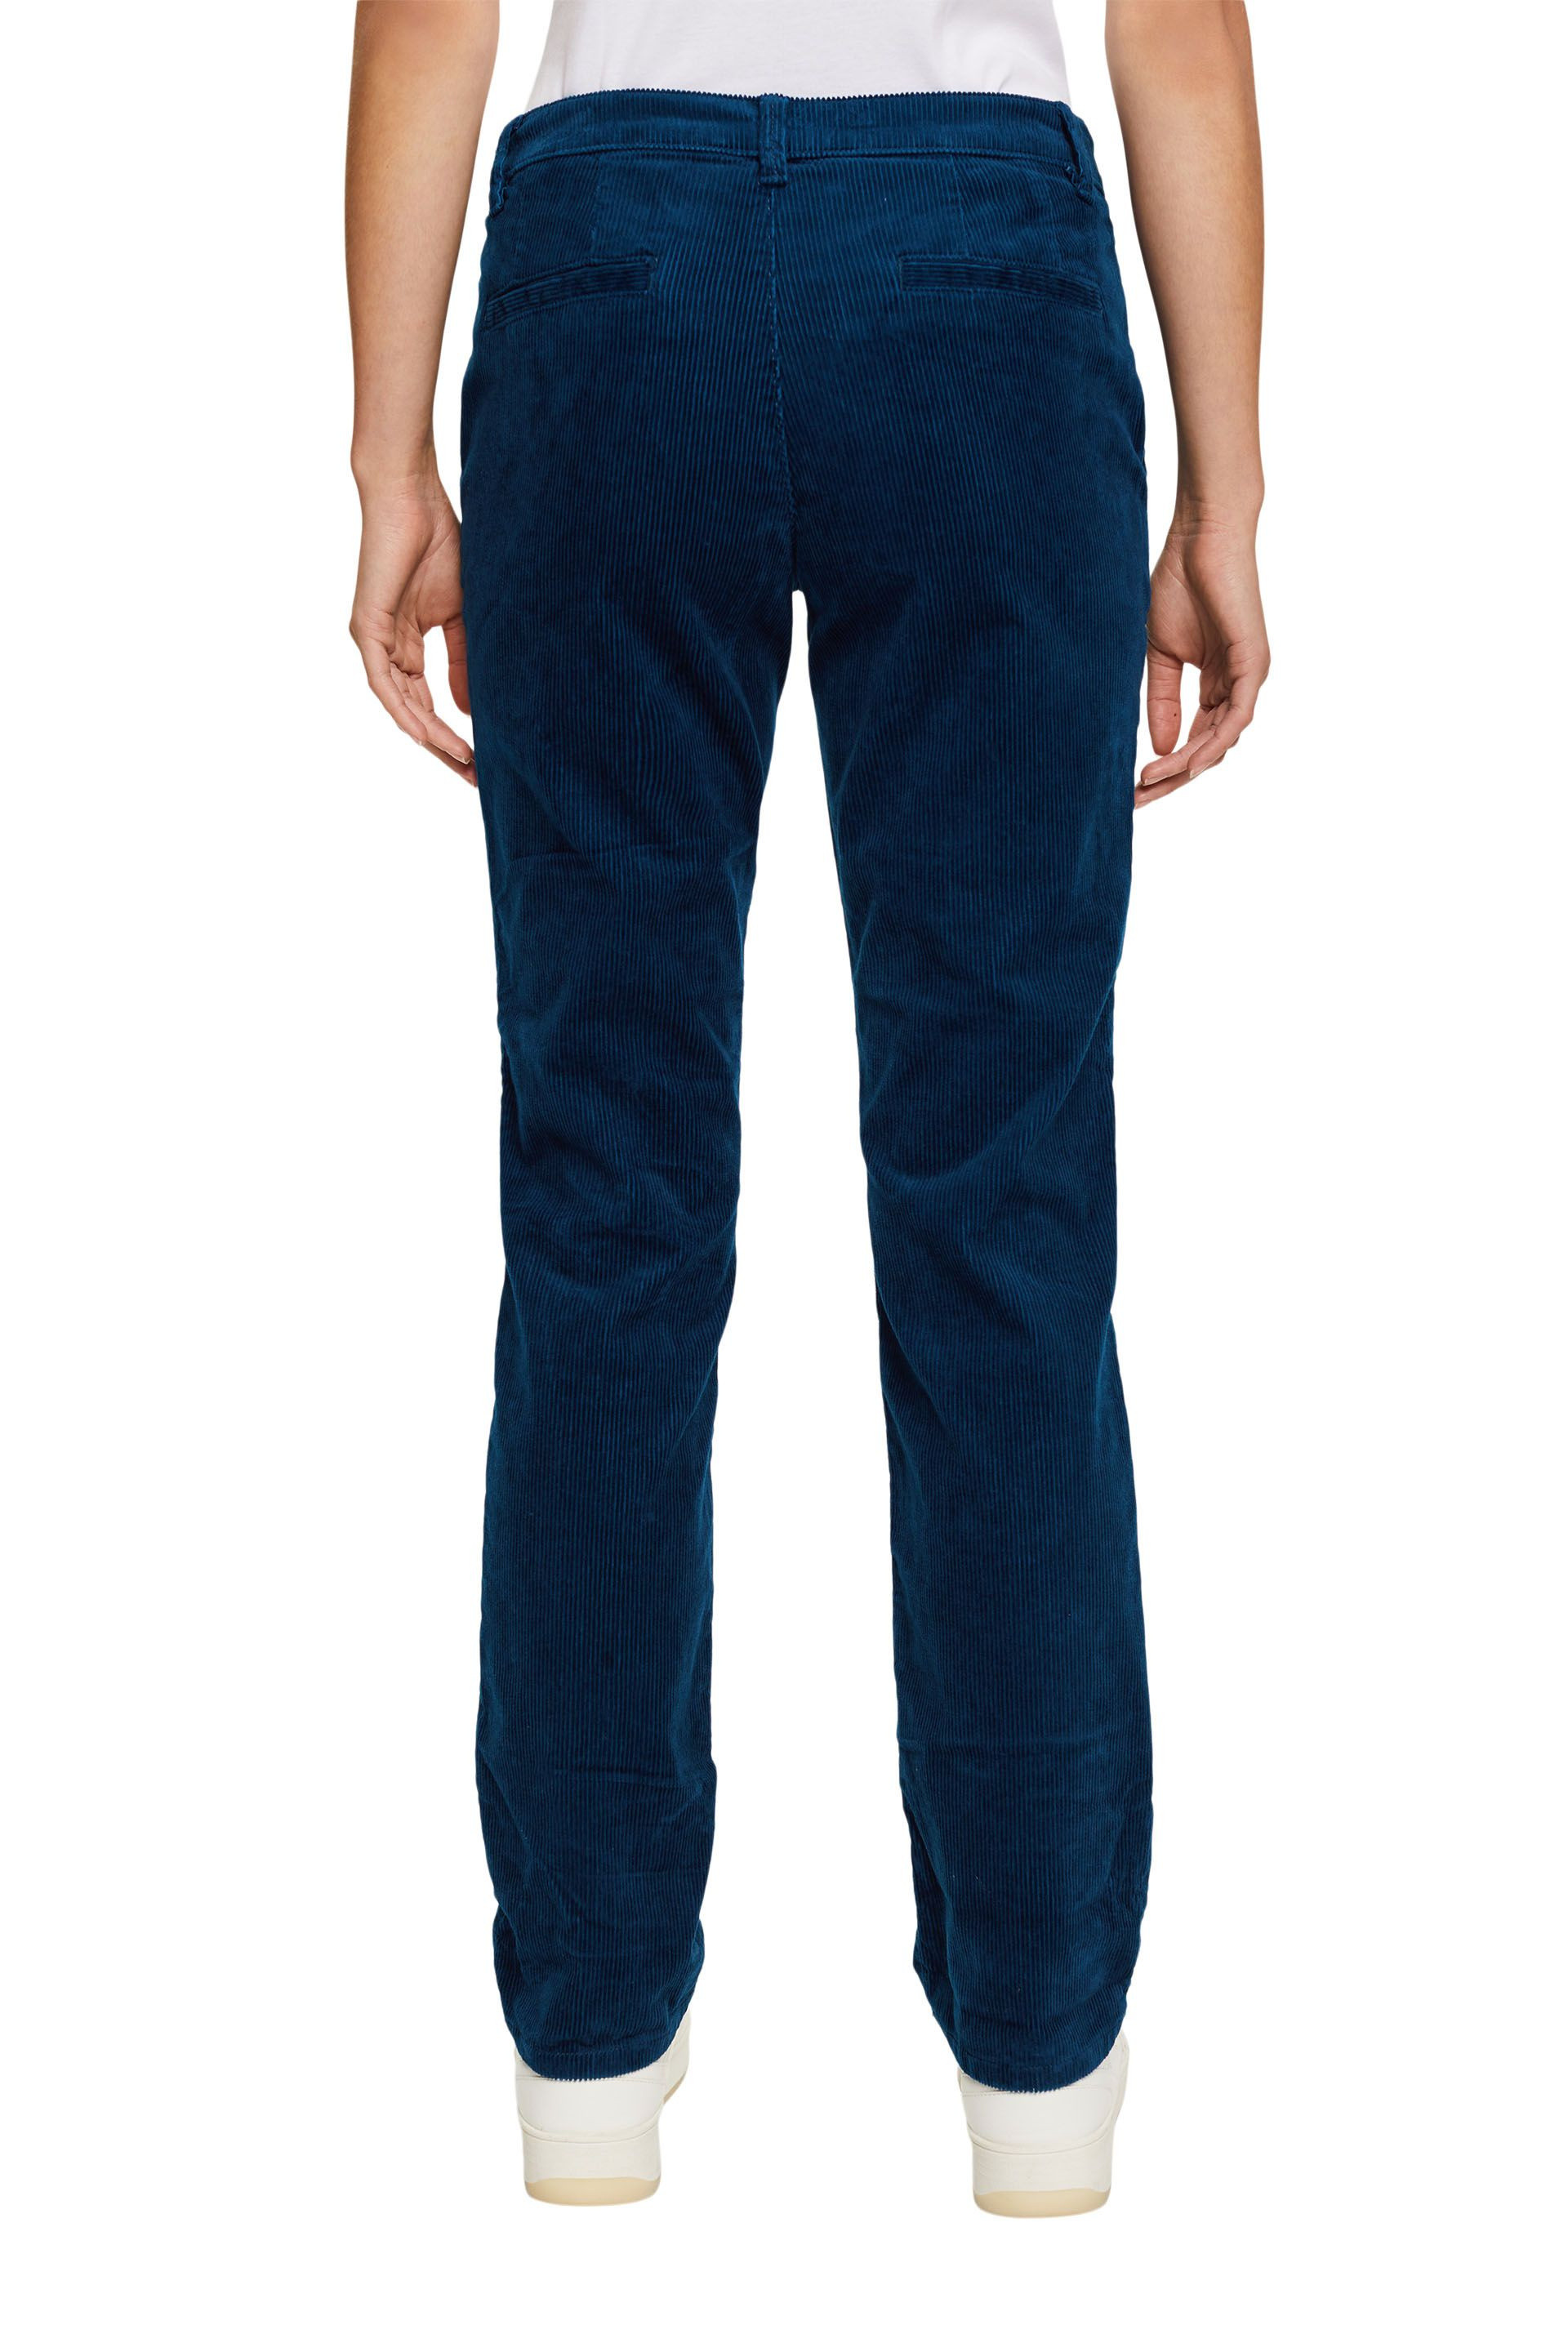 Pantalone in velluto di cotone, Denim, large image number 3